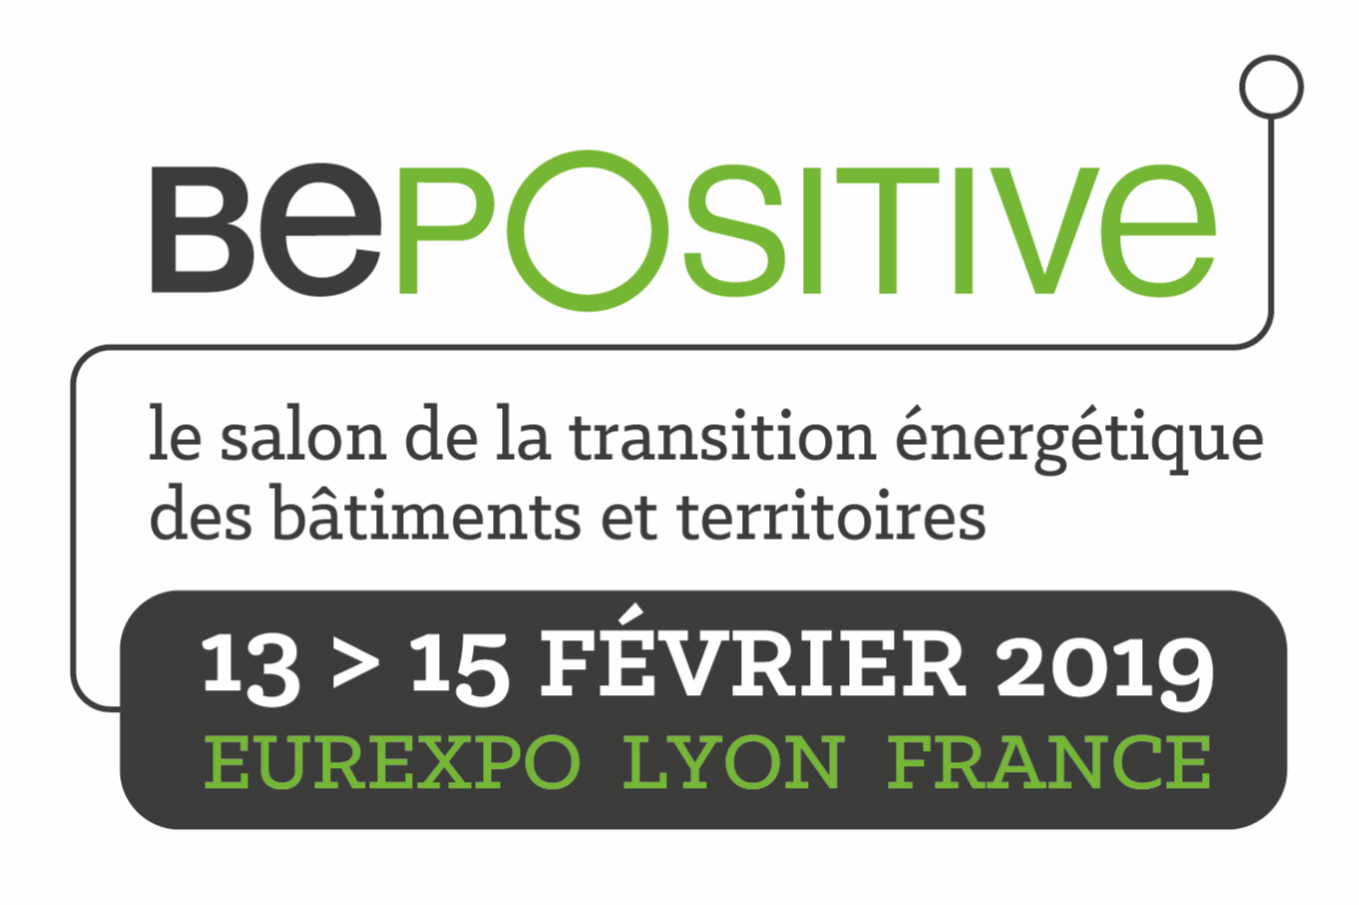 BePOSITIVE fair, energy transition fair